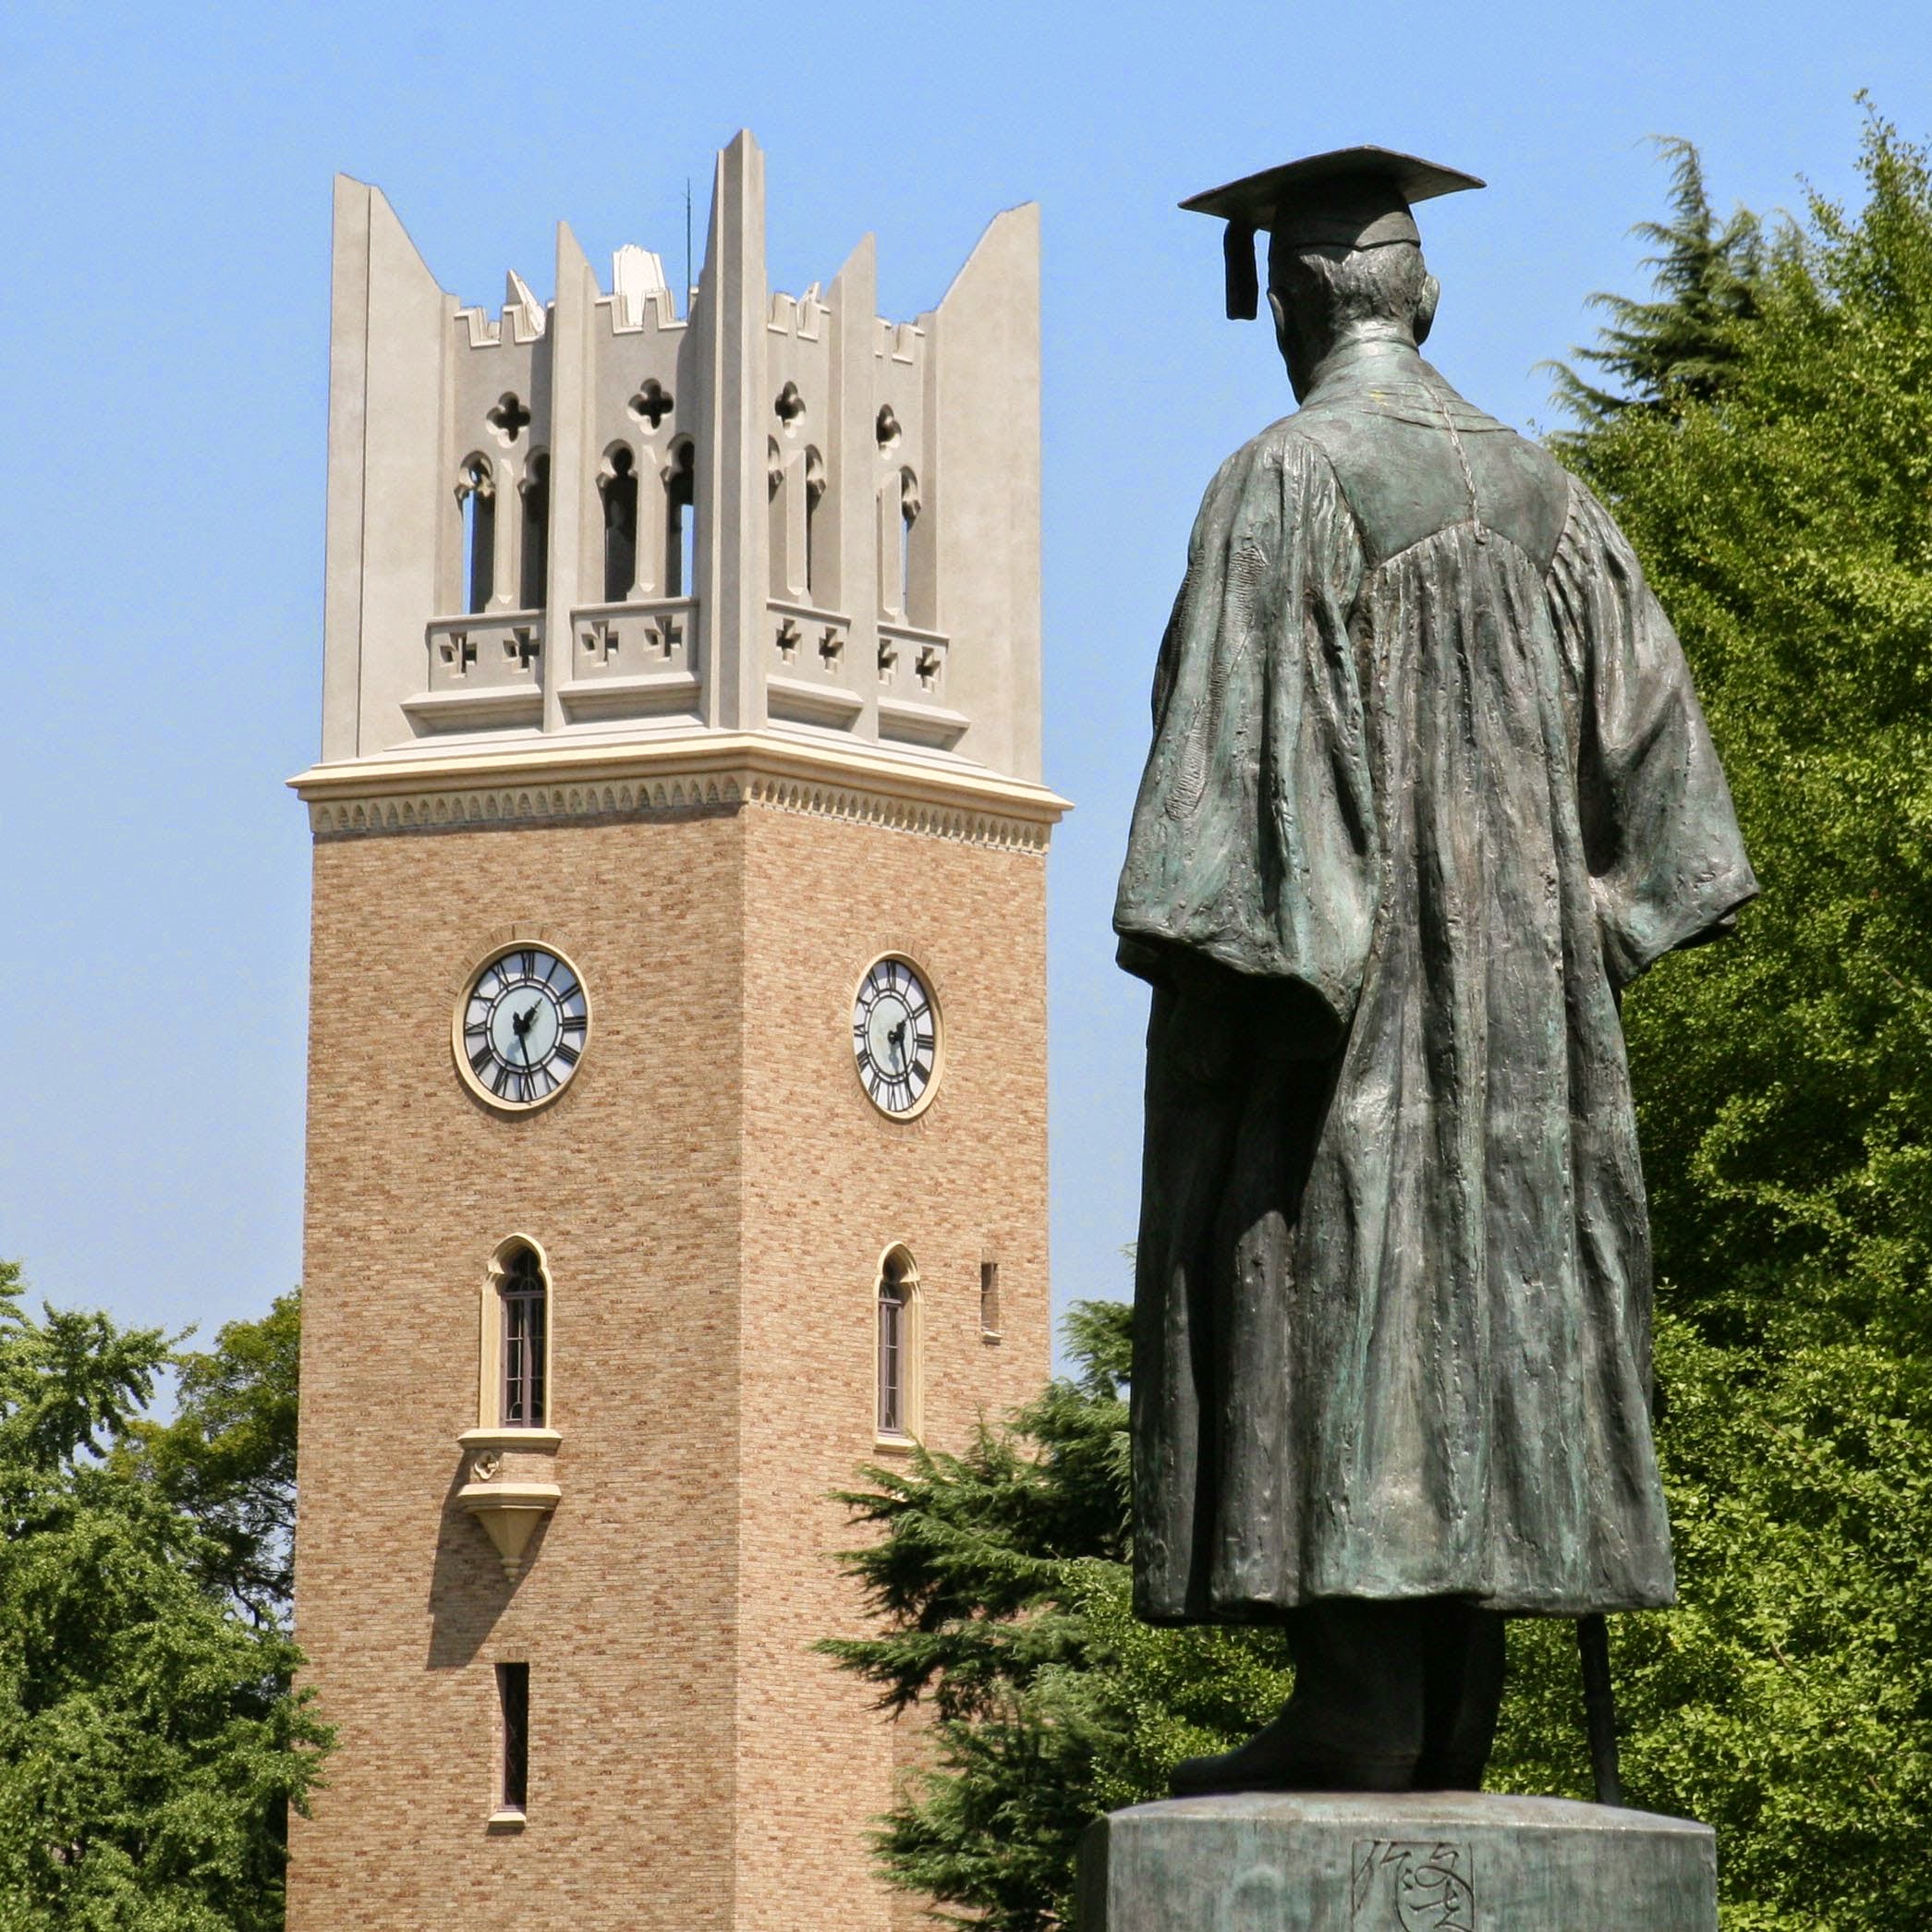 File:大隈重信の像と早稲田大学大隈講堂.jpg - Wikimedia Commons